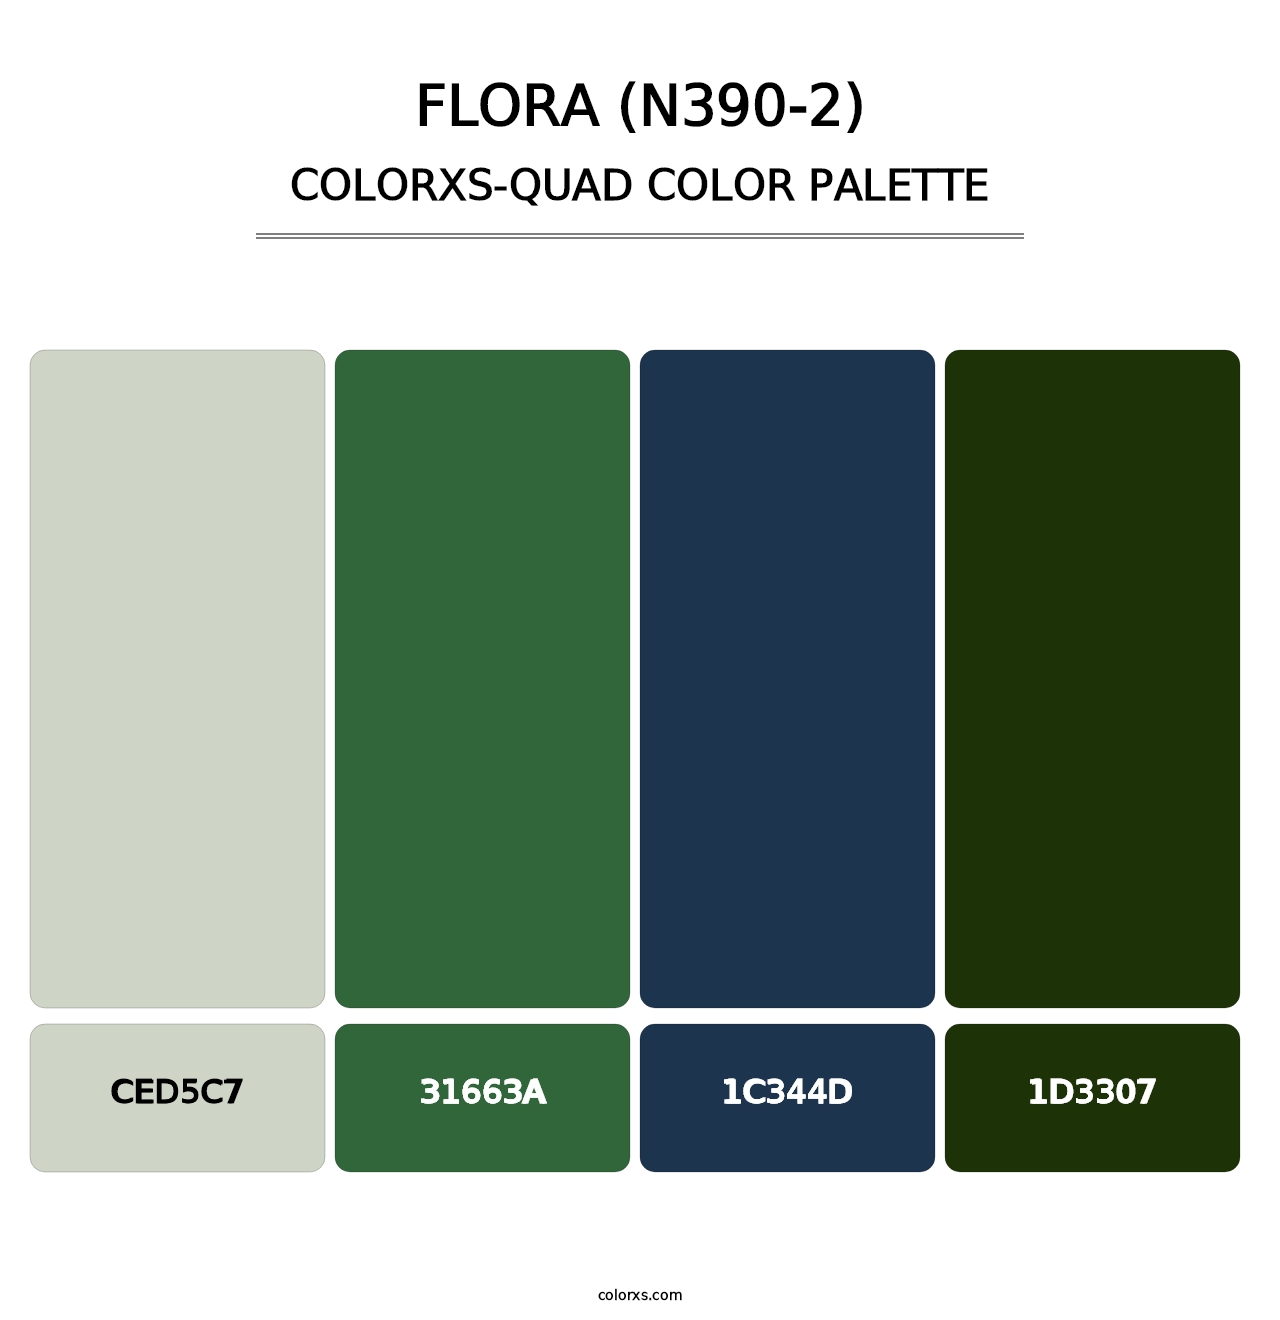 Flora (N390-2) - Colorxs Quad Palette